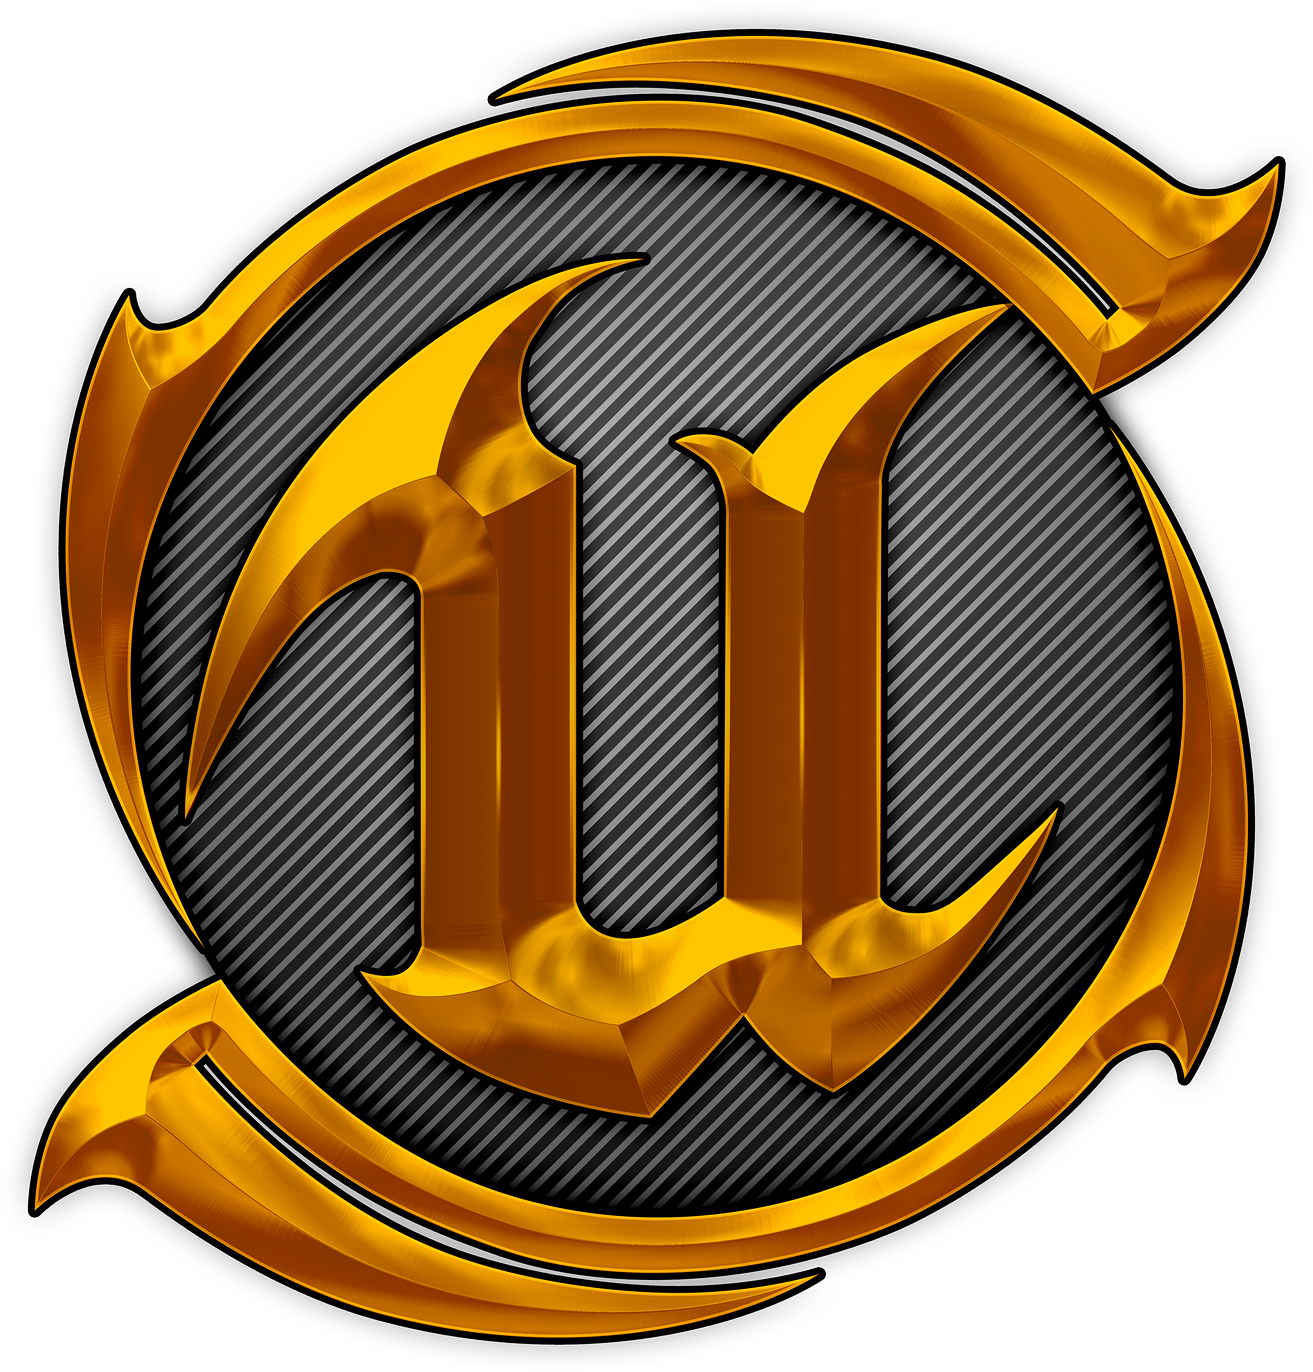 Emblem Clipart (1600x1600), Png Download